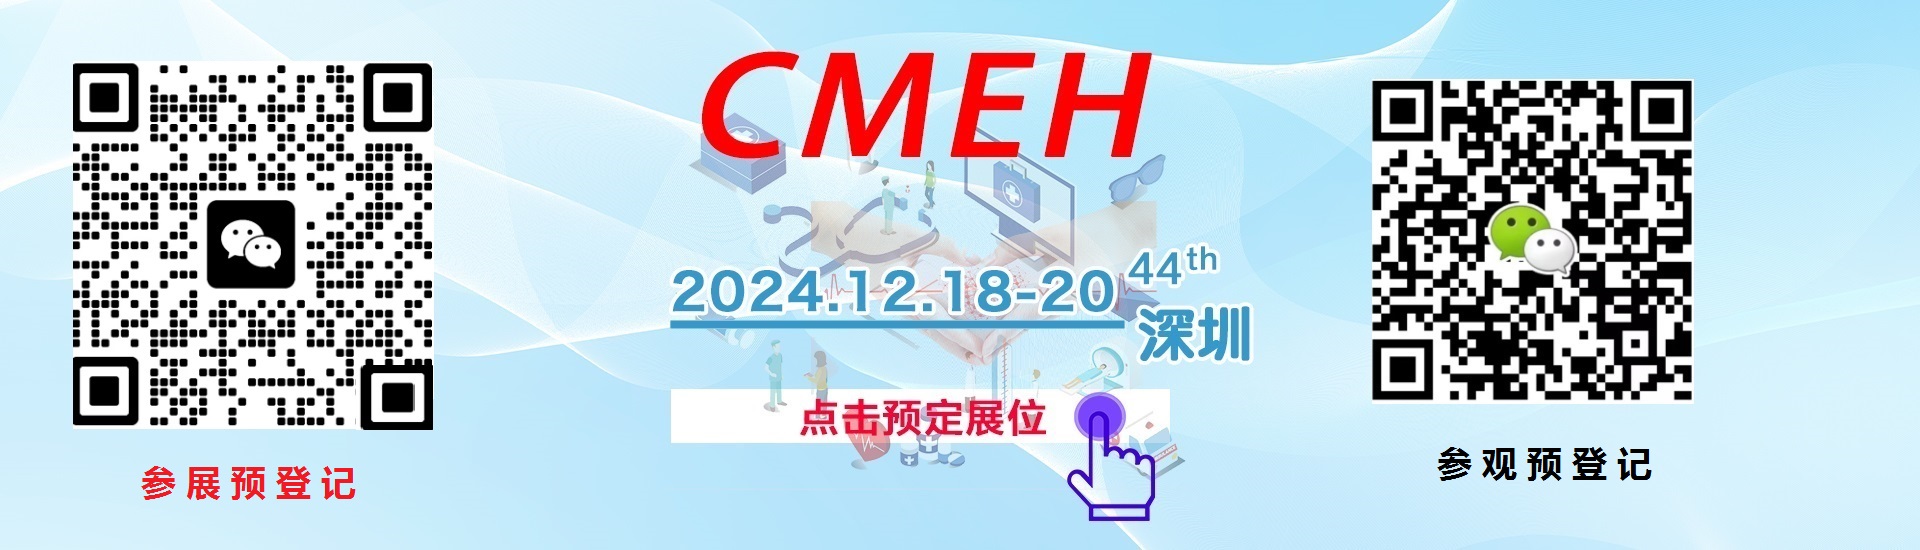 下届展位申请—2024中国(深圳)国际医疗器械展览会